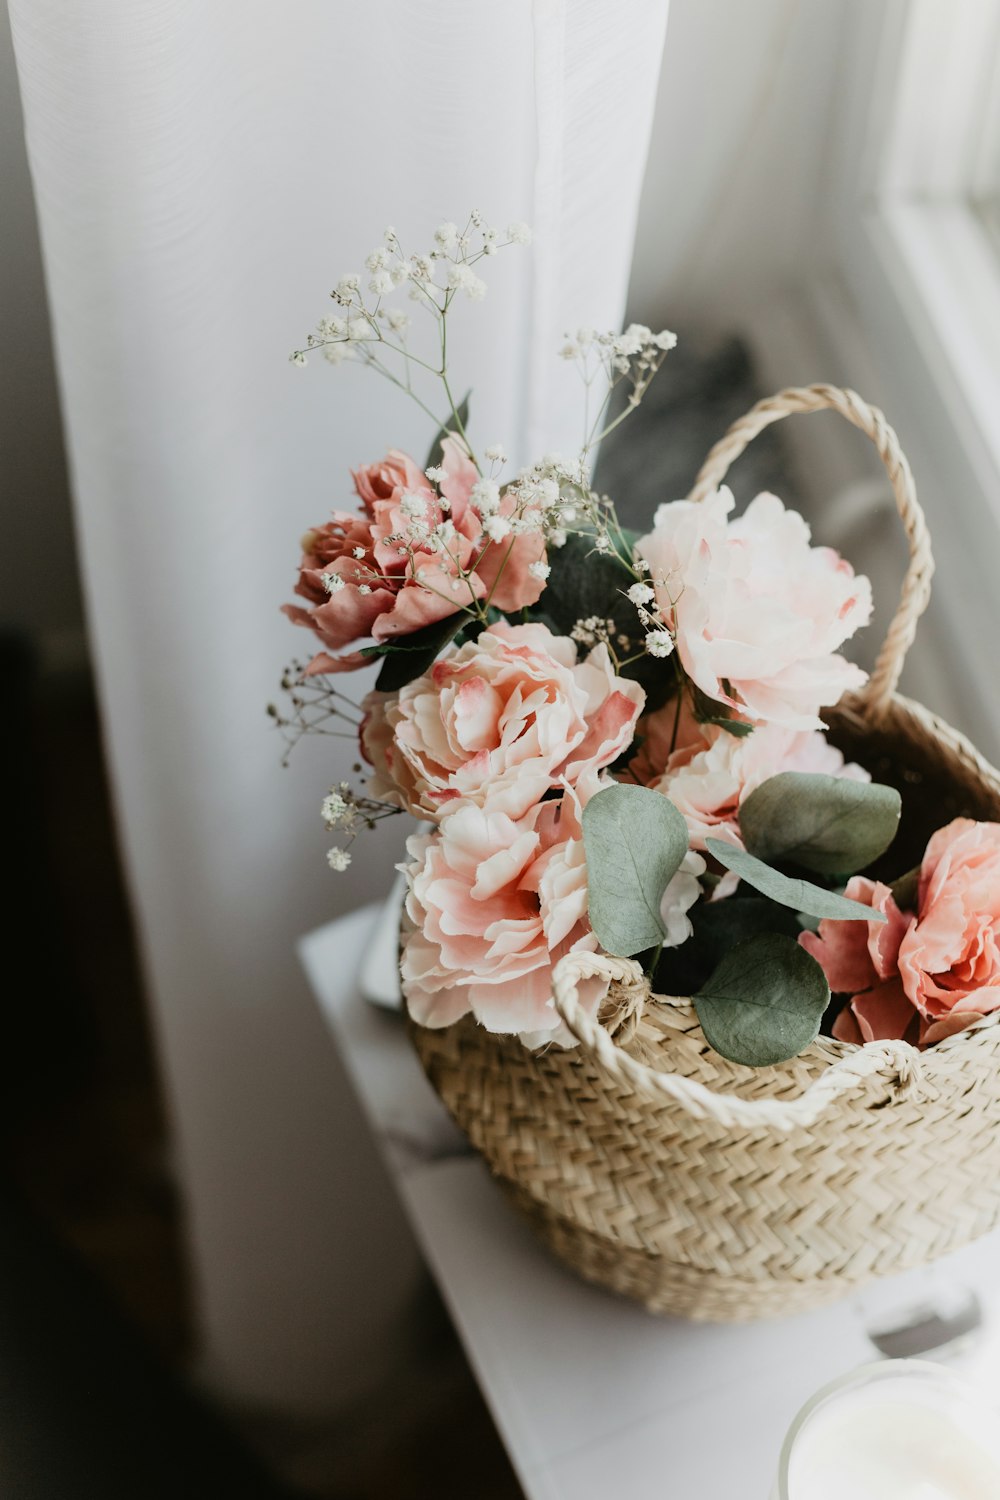 flowers centerpiece in brown wicker basket